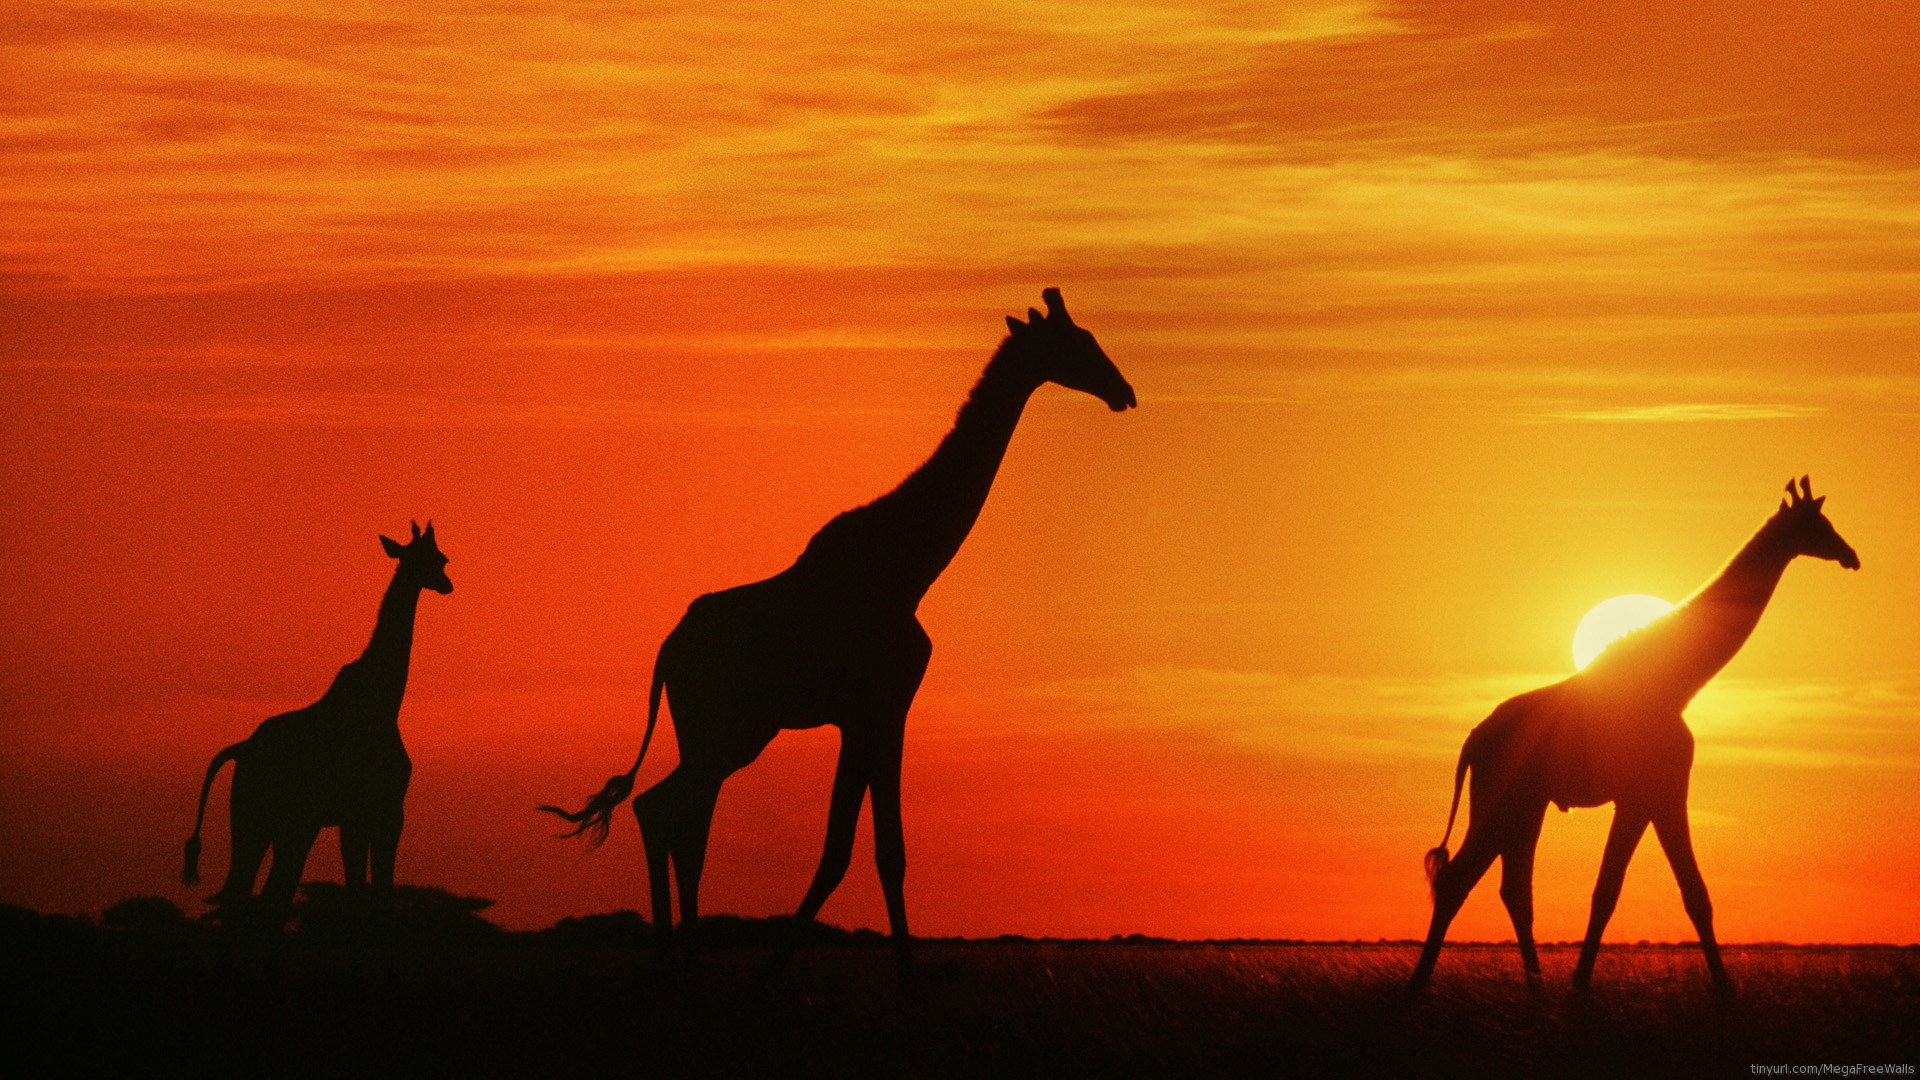 HD Giraffe Siluet in Sunset 1080p Wallpaper Full Size ...